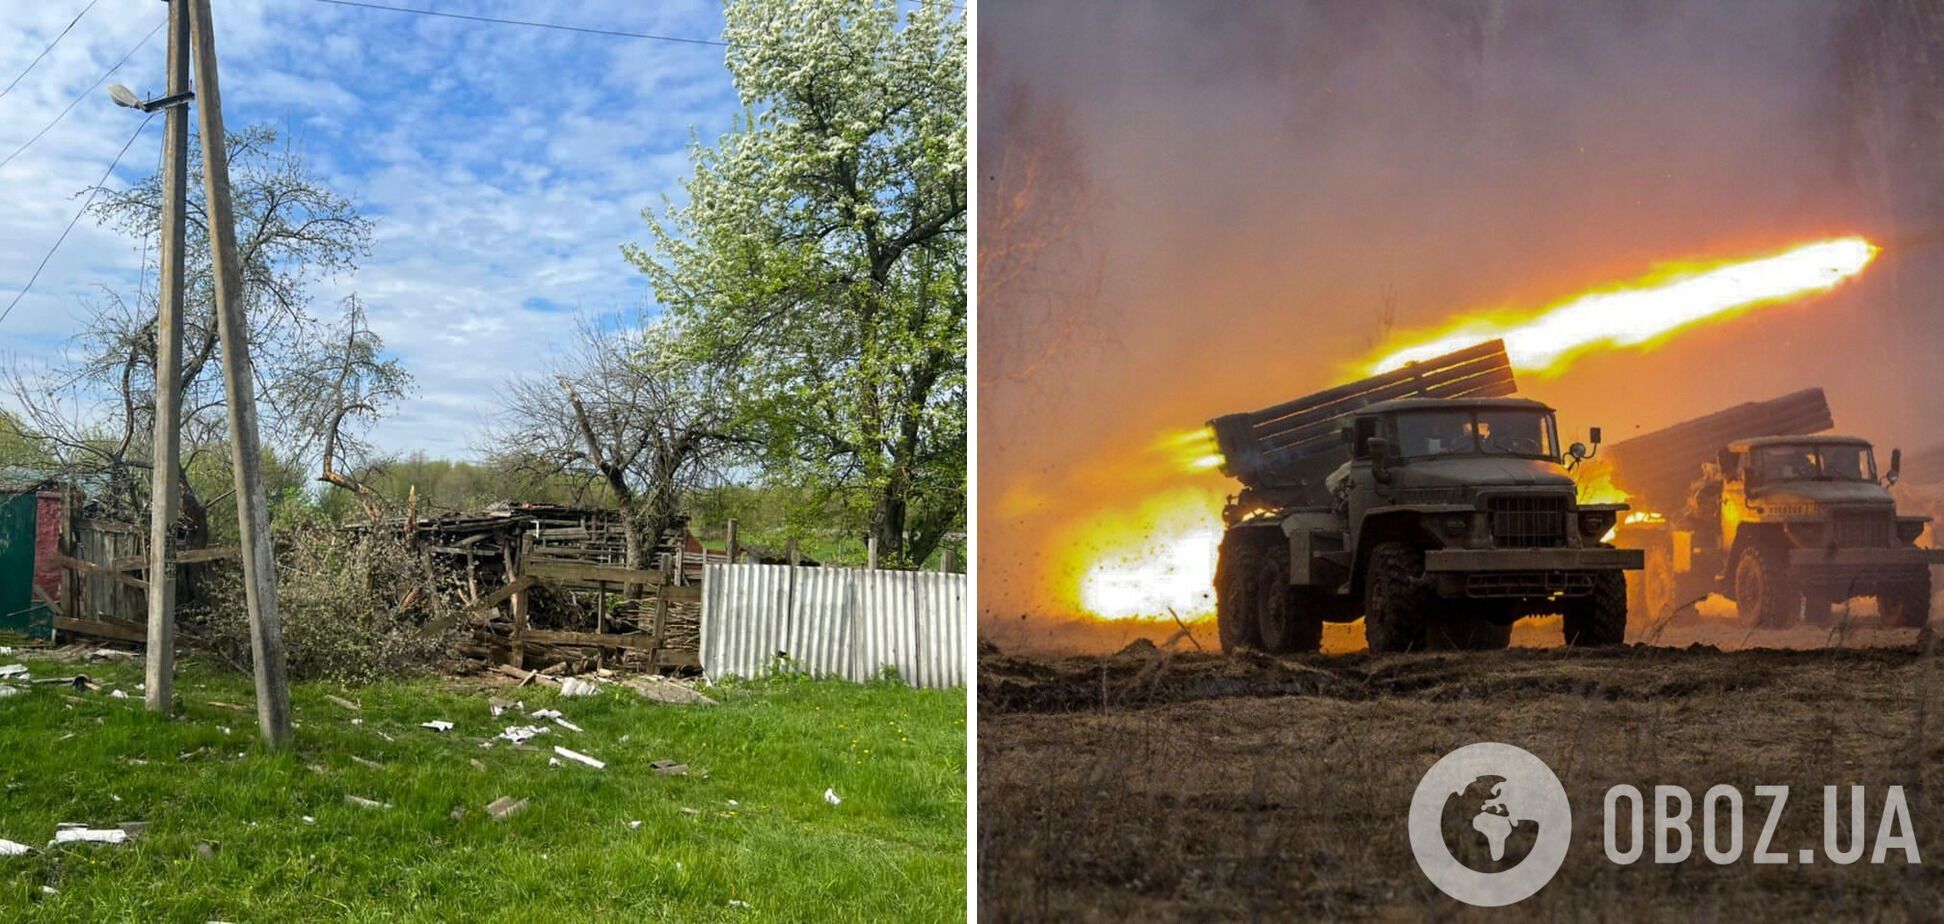 Сумщину обстреляли из тяжелой артиллерии с территории РФ: повреждены дома, есть погибший. Фото